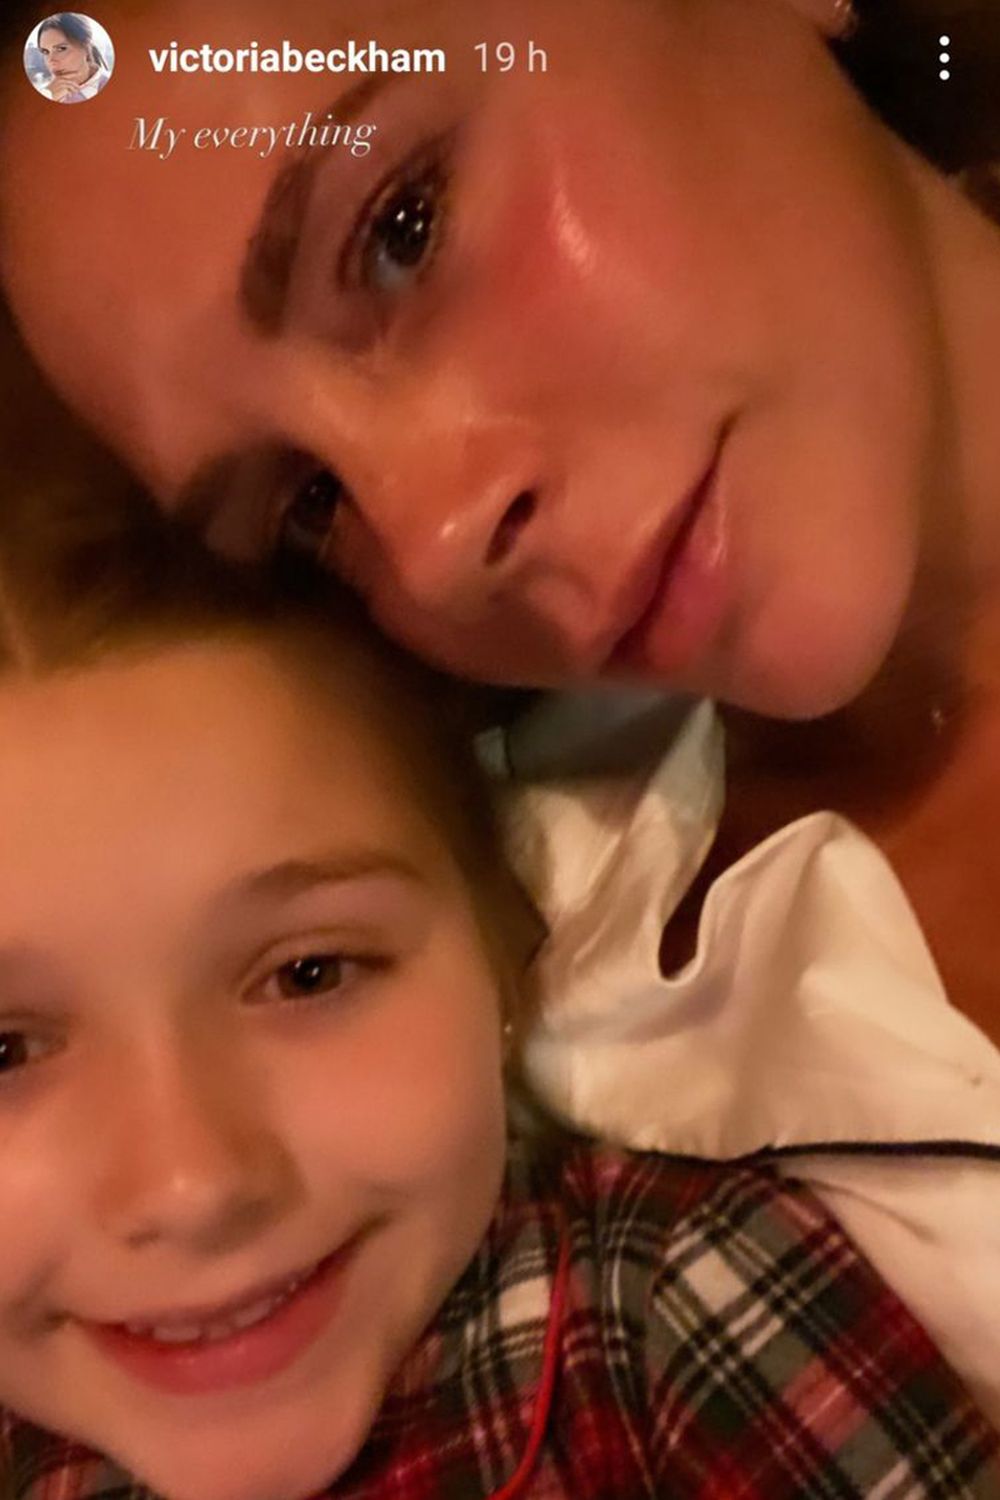 Victoria Beckham en su selfie sin maquillaje junto a su hija Harper.